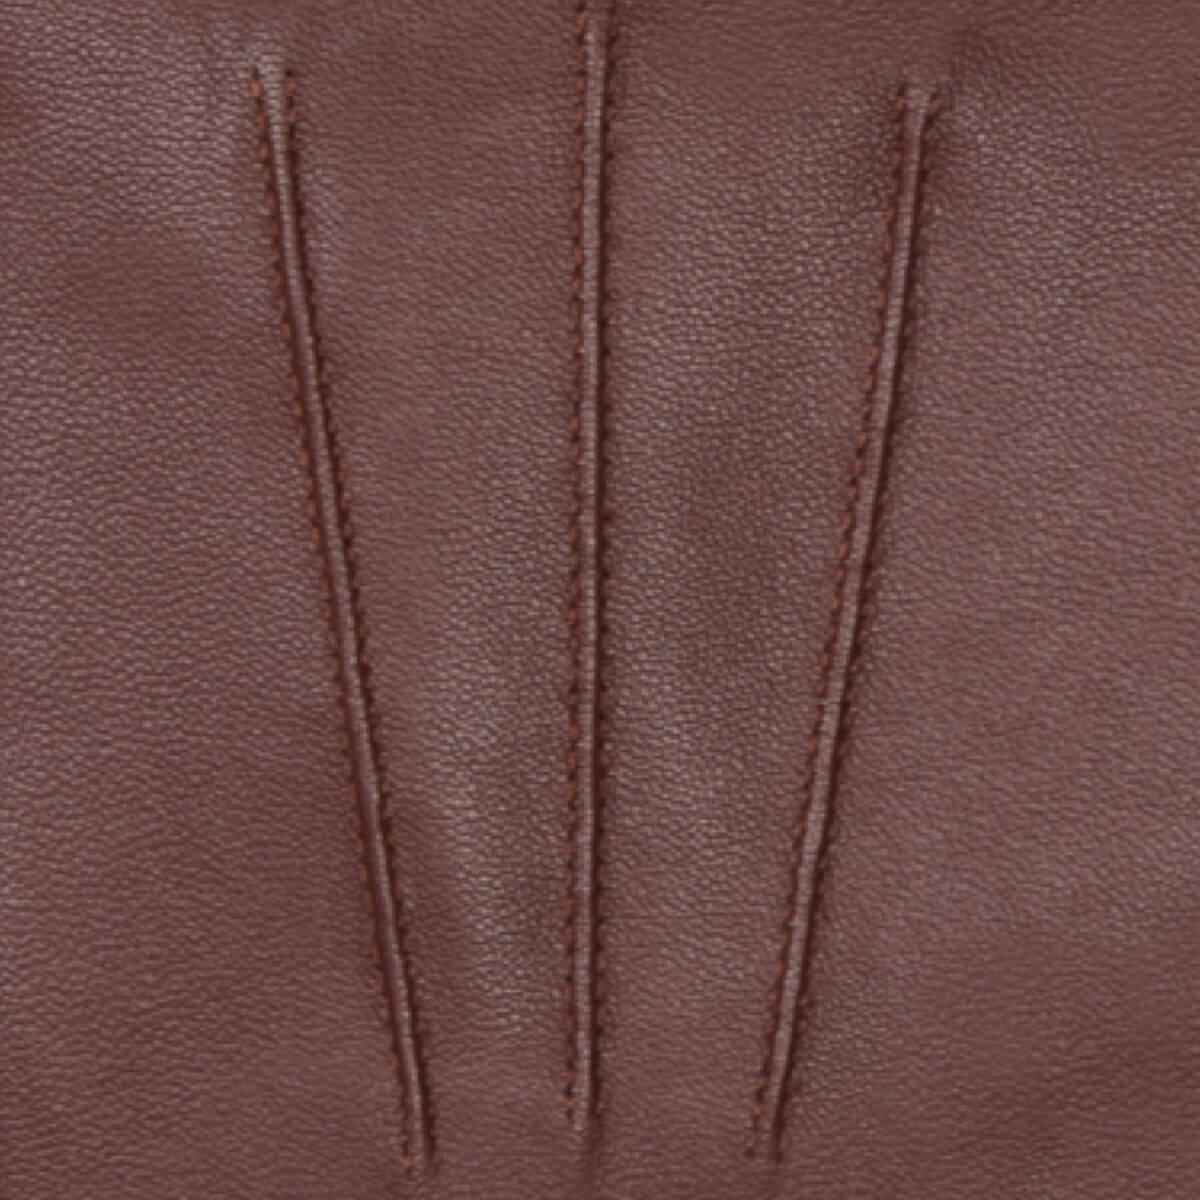 Classic Leather Gloves Brown Men James - Schwartz & von Halen® - Premium Leather Gloves - 4